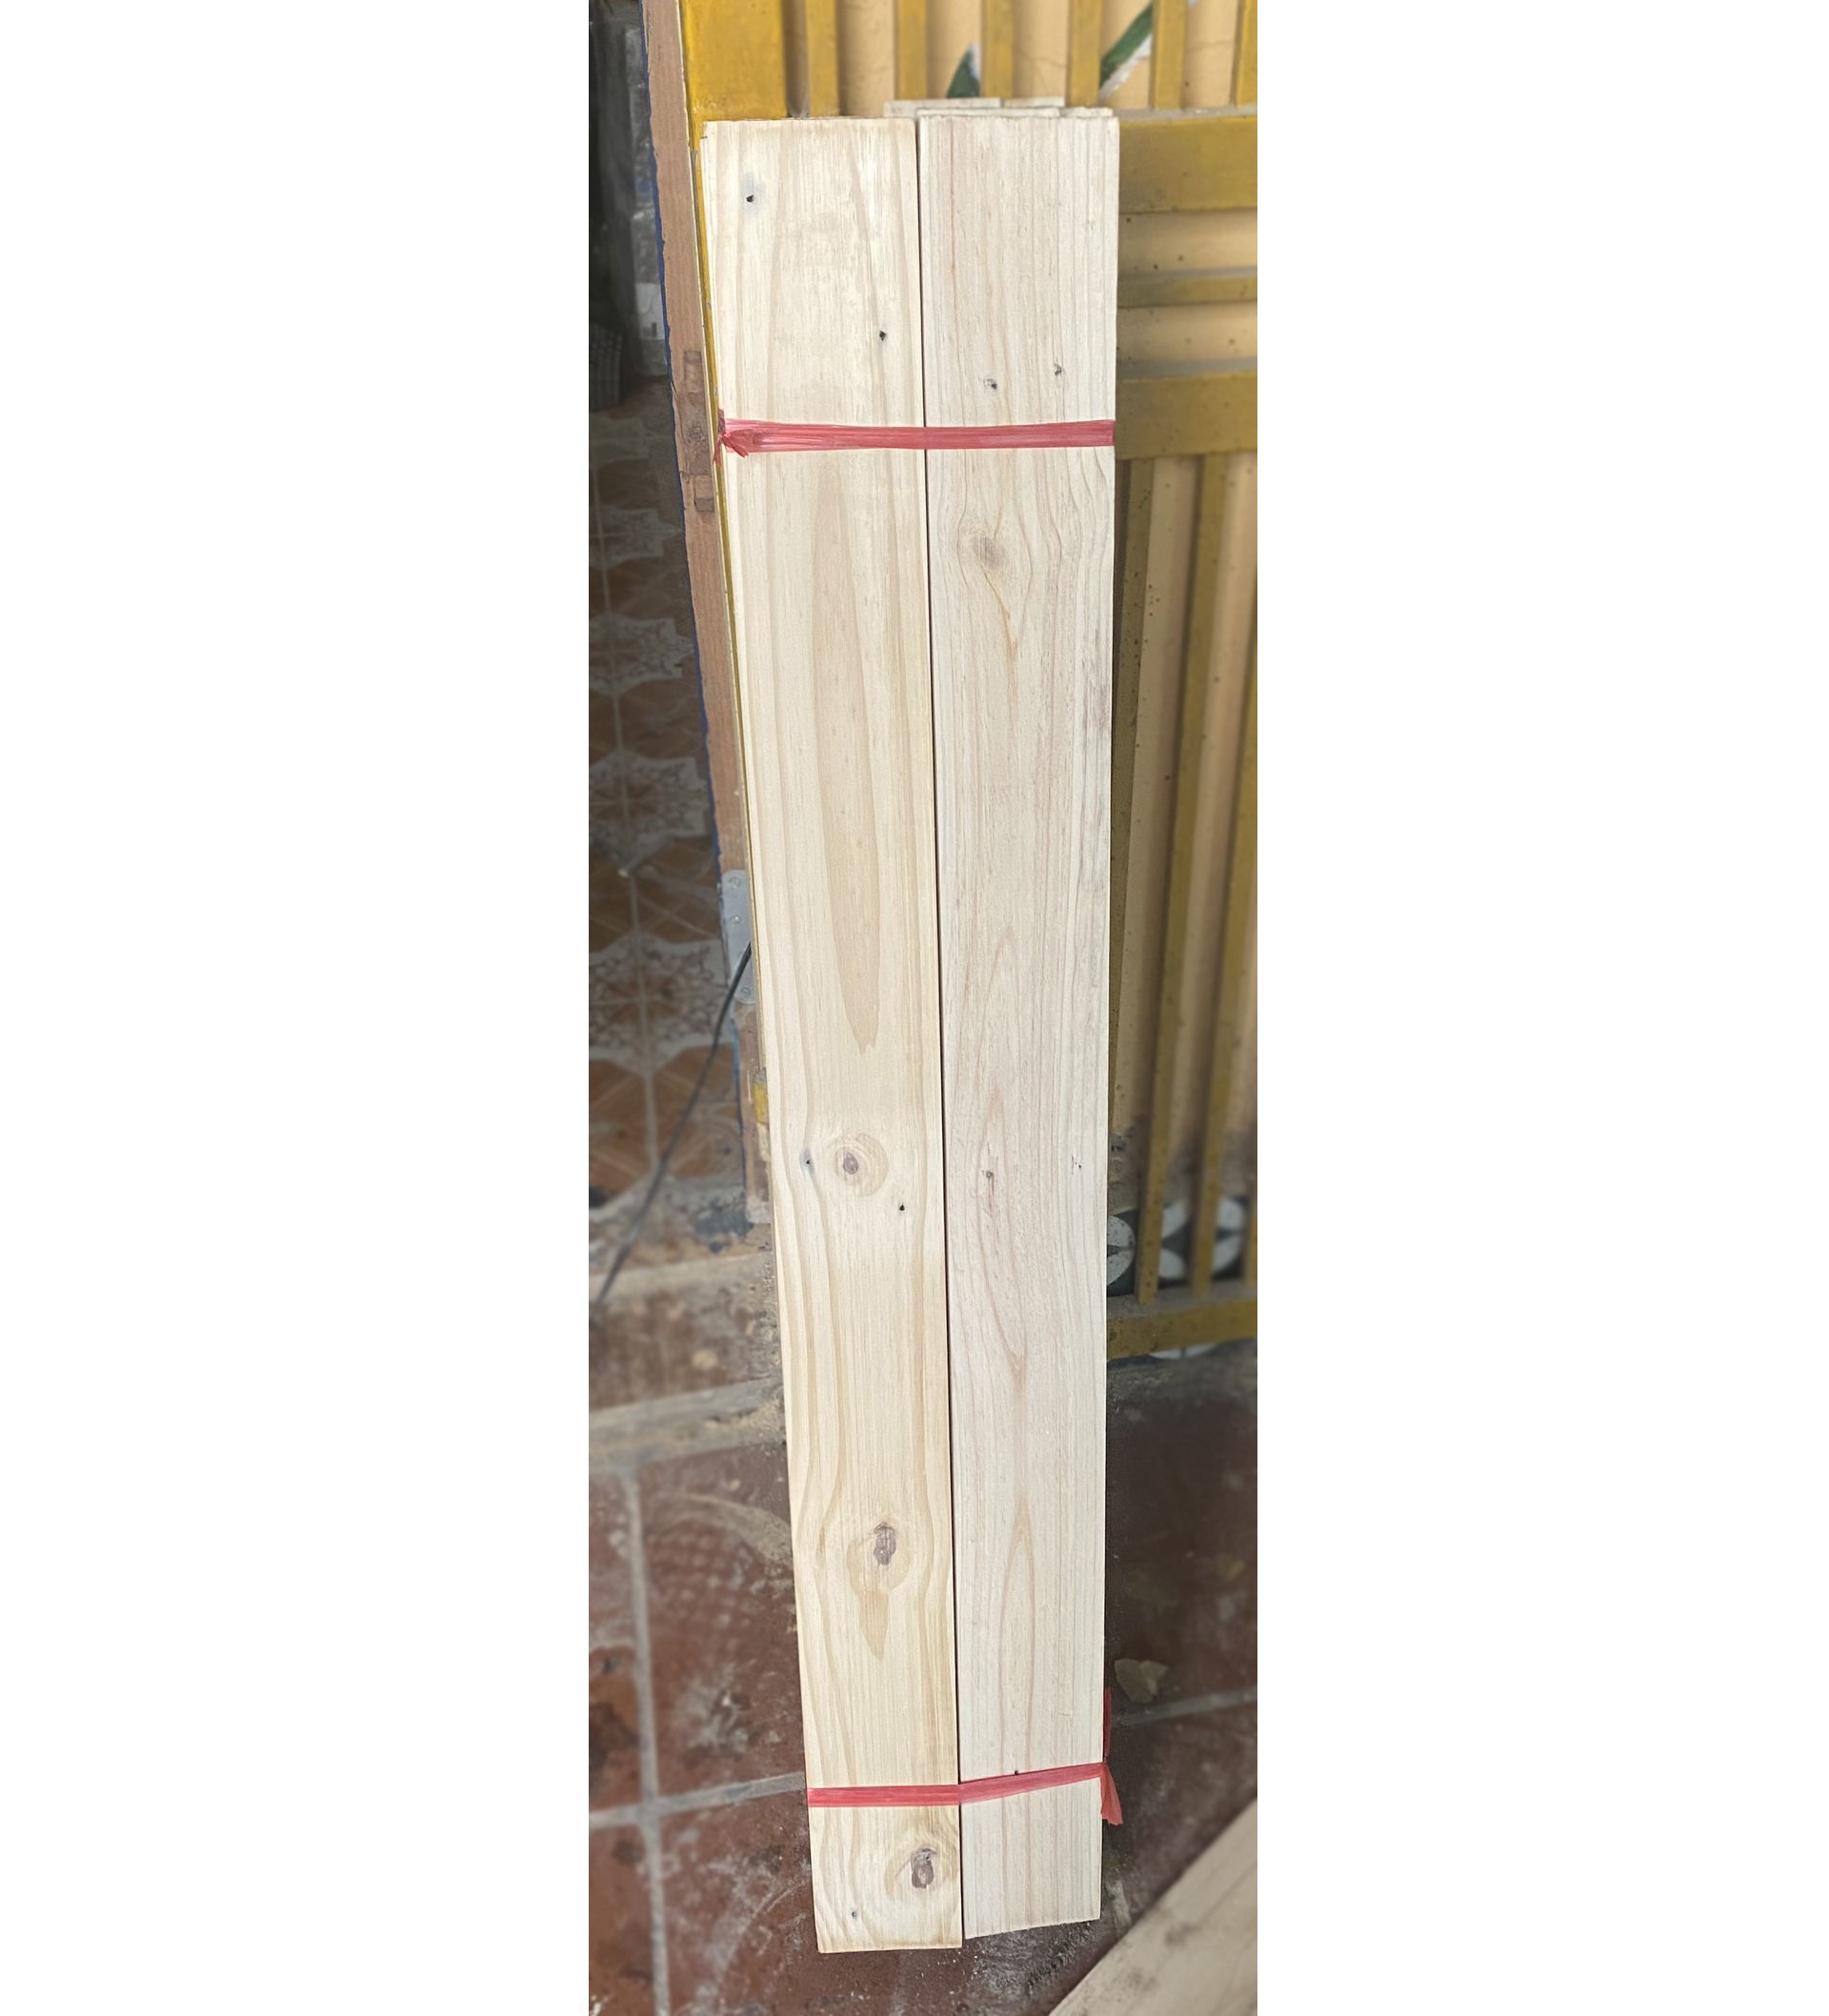 1 thanh gỗ thông dài 110cm, rộng 9cm, dày 1.5cm bào nhẵn 4 mặt